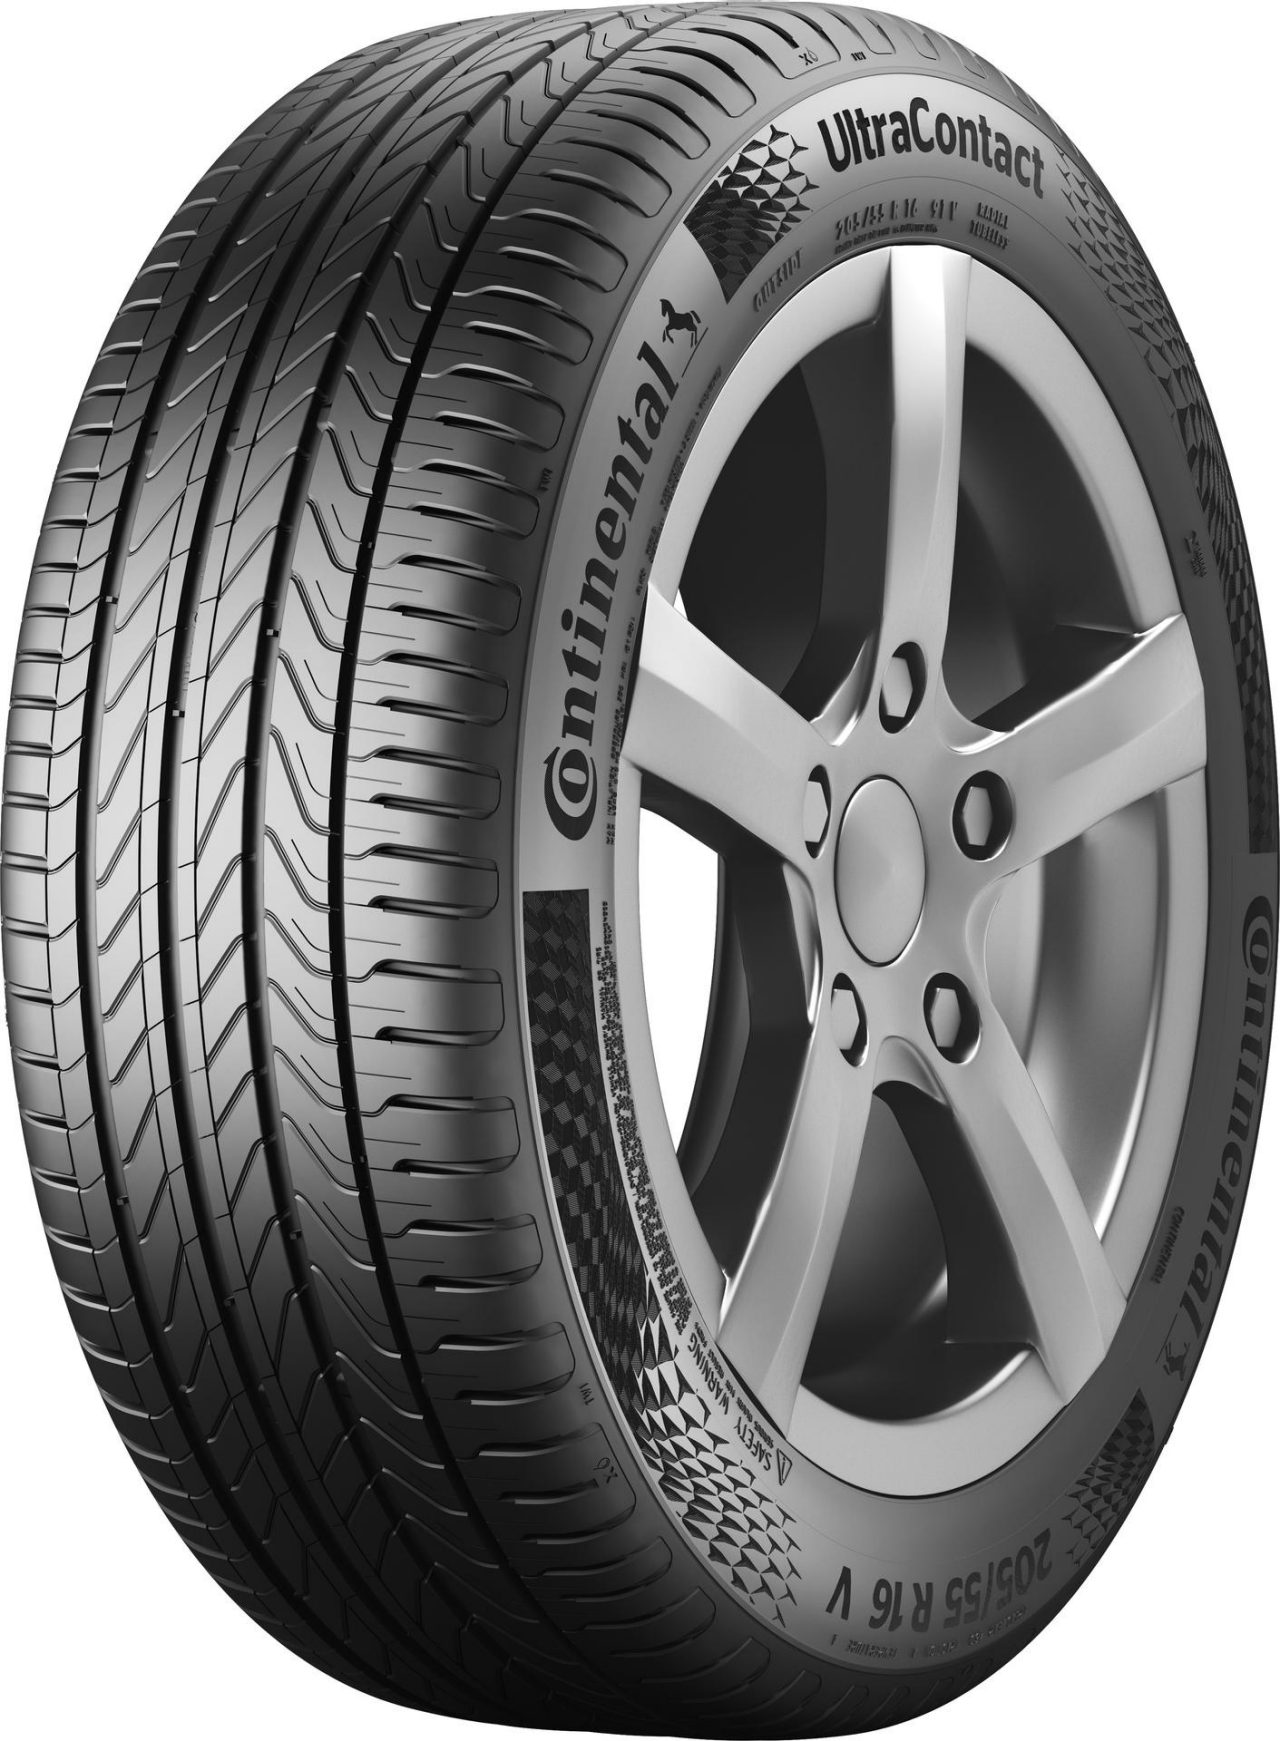 ADAC, ÖAMTC et TCS : les pneus été Continental "établissent la référence en matière de sécurité de conduite".